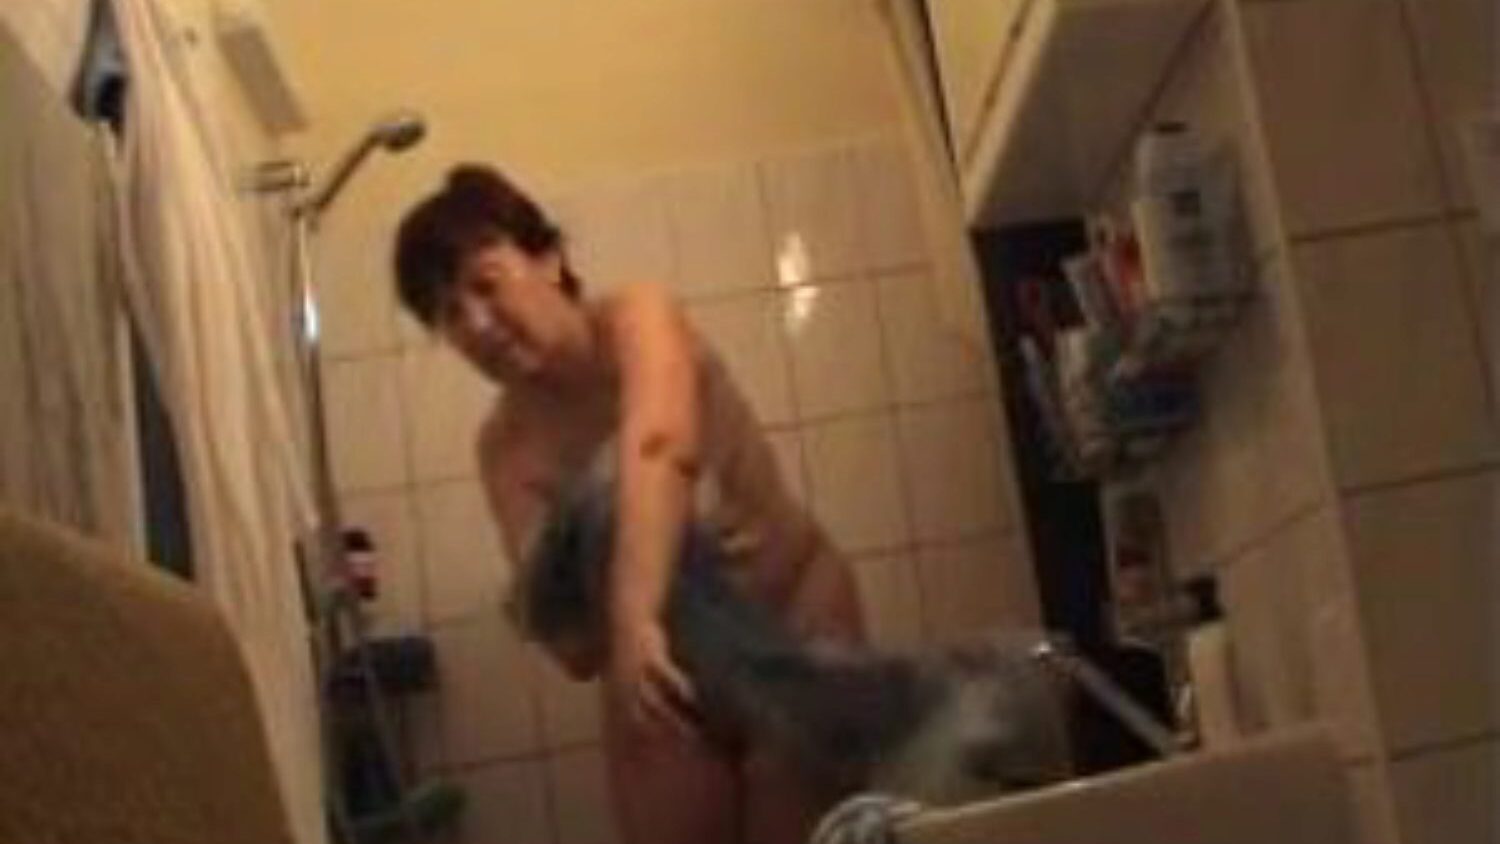 mamie allemande nue dans la salle de bain, publicité vidéo porno allemande gratuite regarder mamie allemande nue dans la vidéo de la salle de bain sur xhamster, la plus grosse ressource Web de tube de branchement avec des tonnes de films pornographiques allemands nus et matures